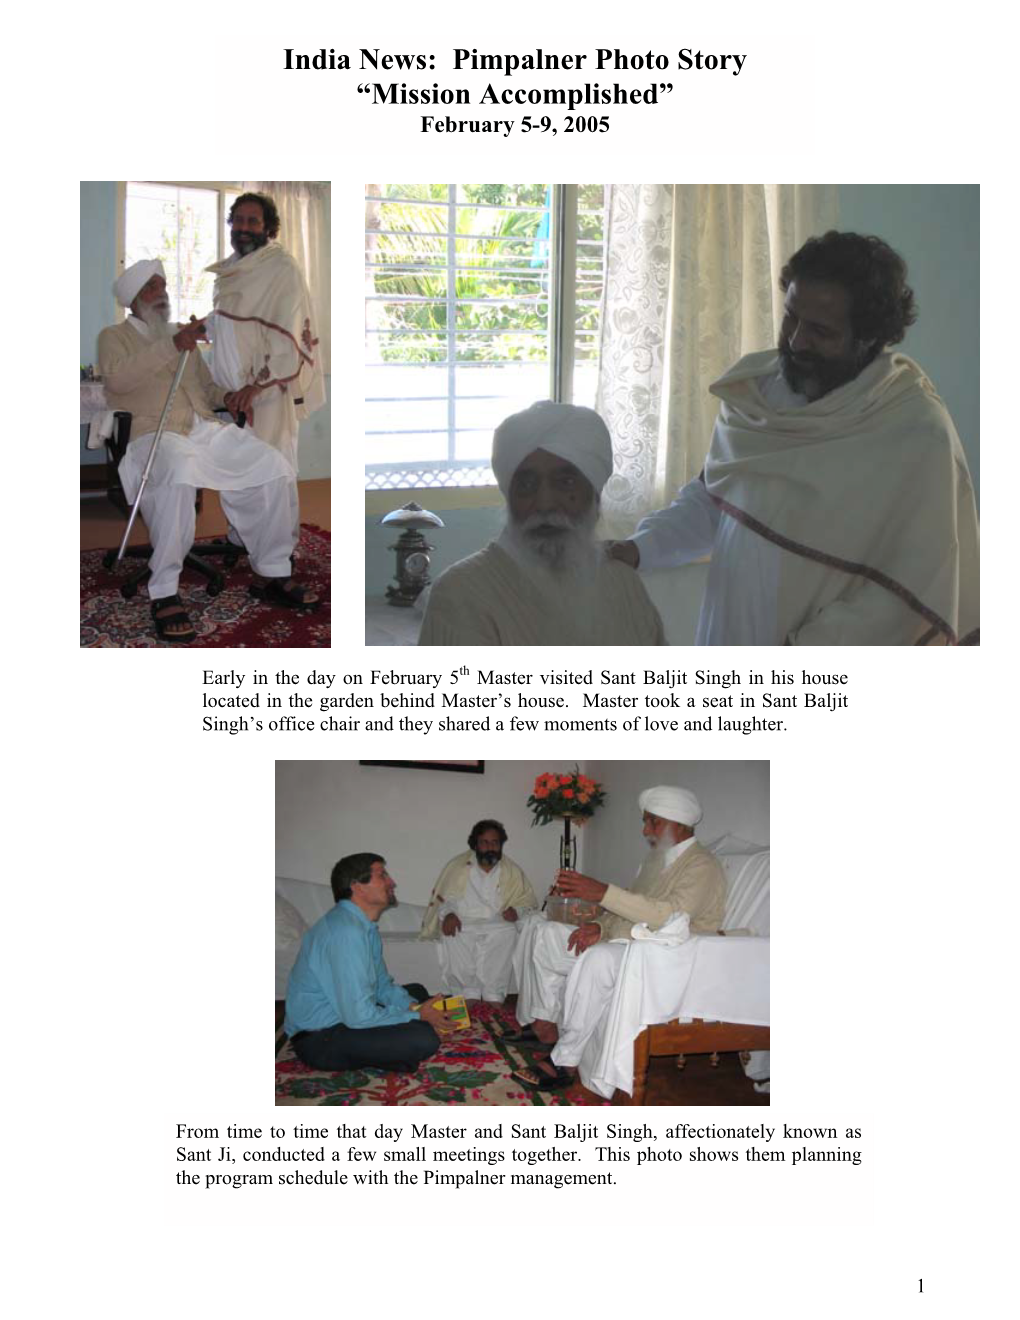 India News: Pimpalner Photo Story “Mission Accomplished” February 5-9, 2005